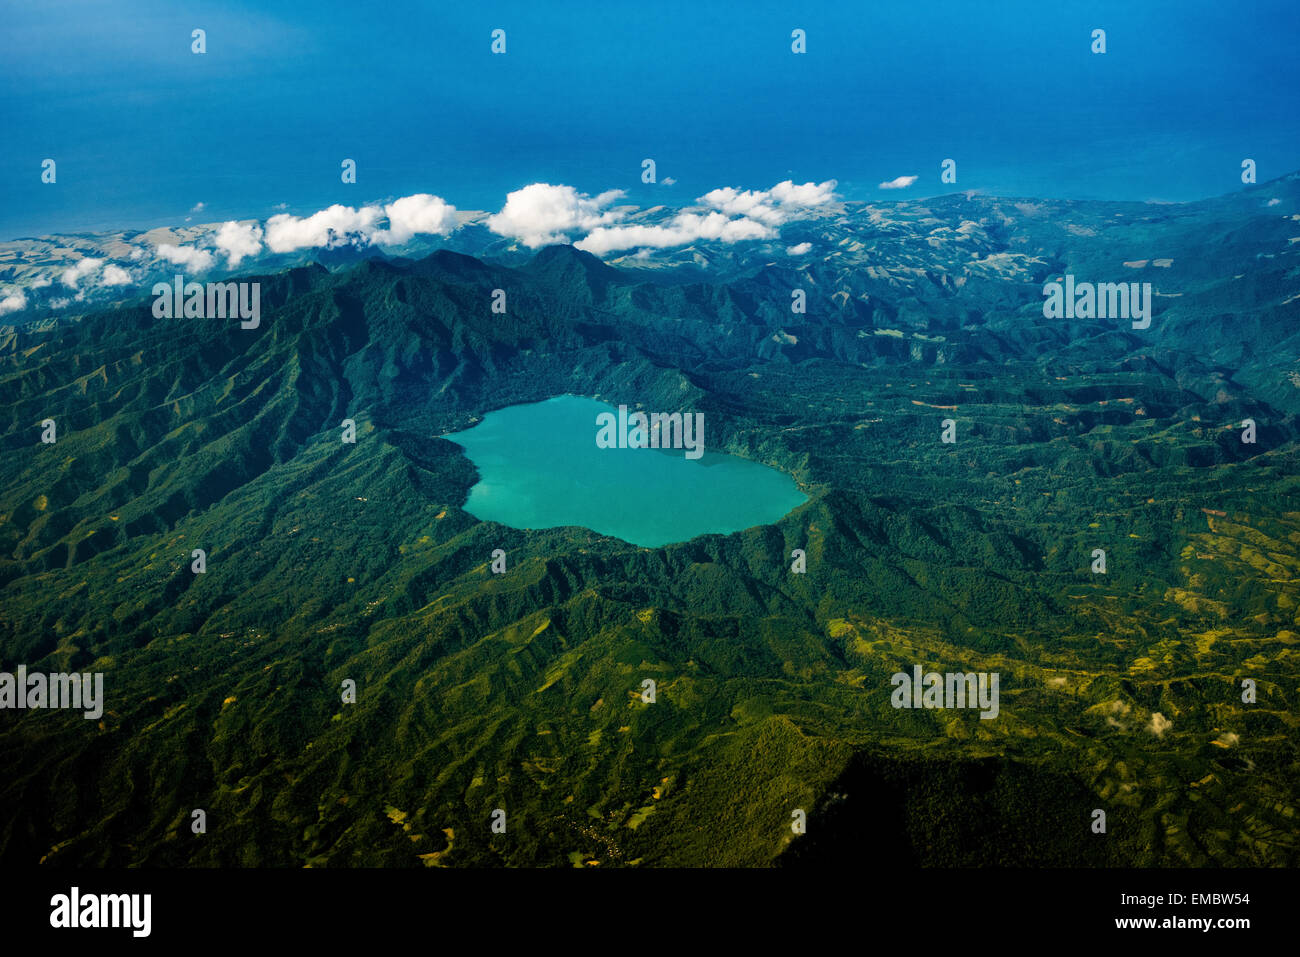 Veduta aerea del Lago del Cratere di Sano Nggoang nelle catene montuose di Mbeliling vicino a Labuan Bajo nella parte occidentale dell'Isola di Flores, Indonesia. Foto Stock